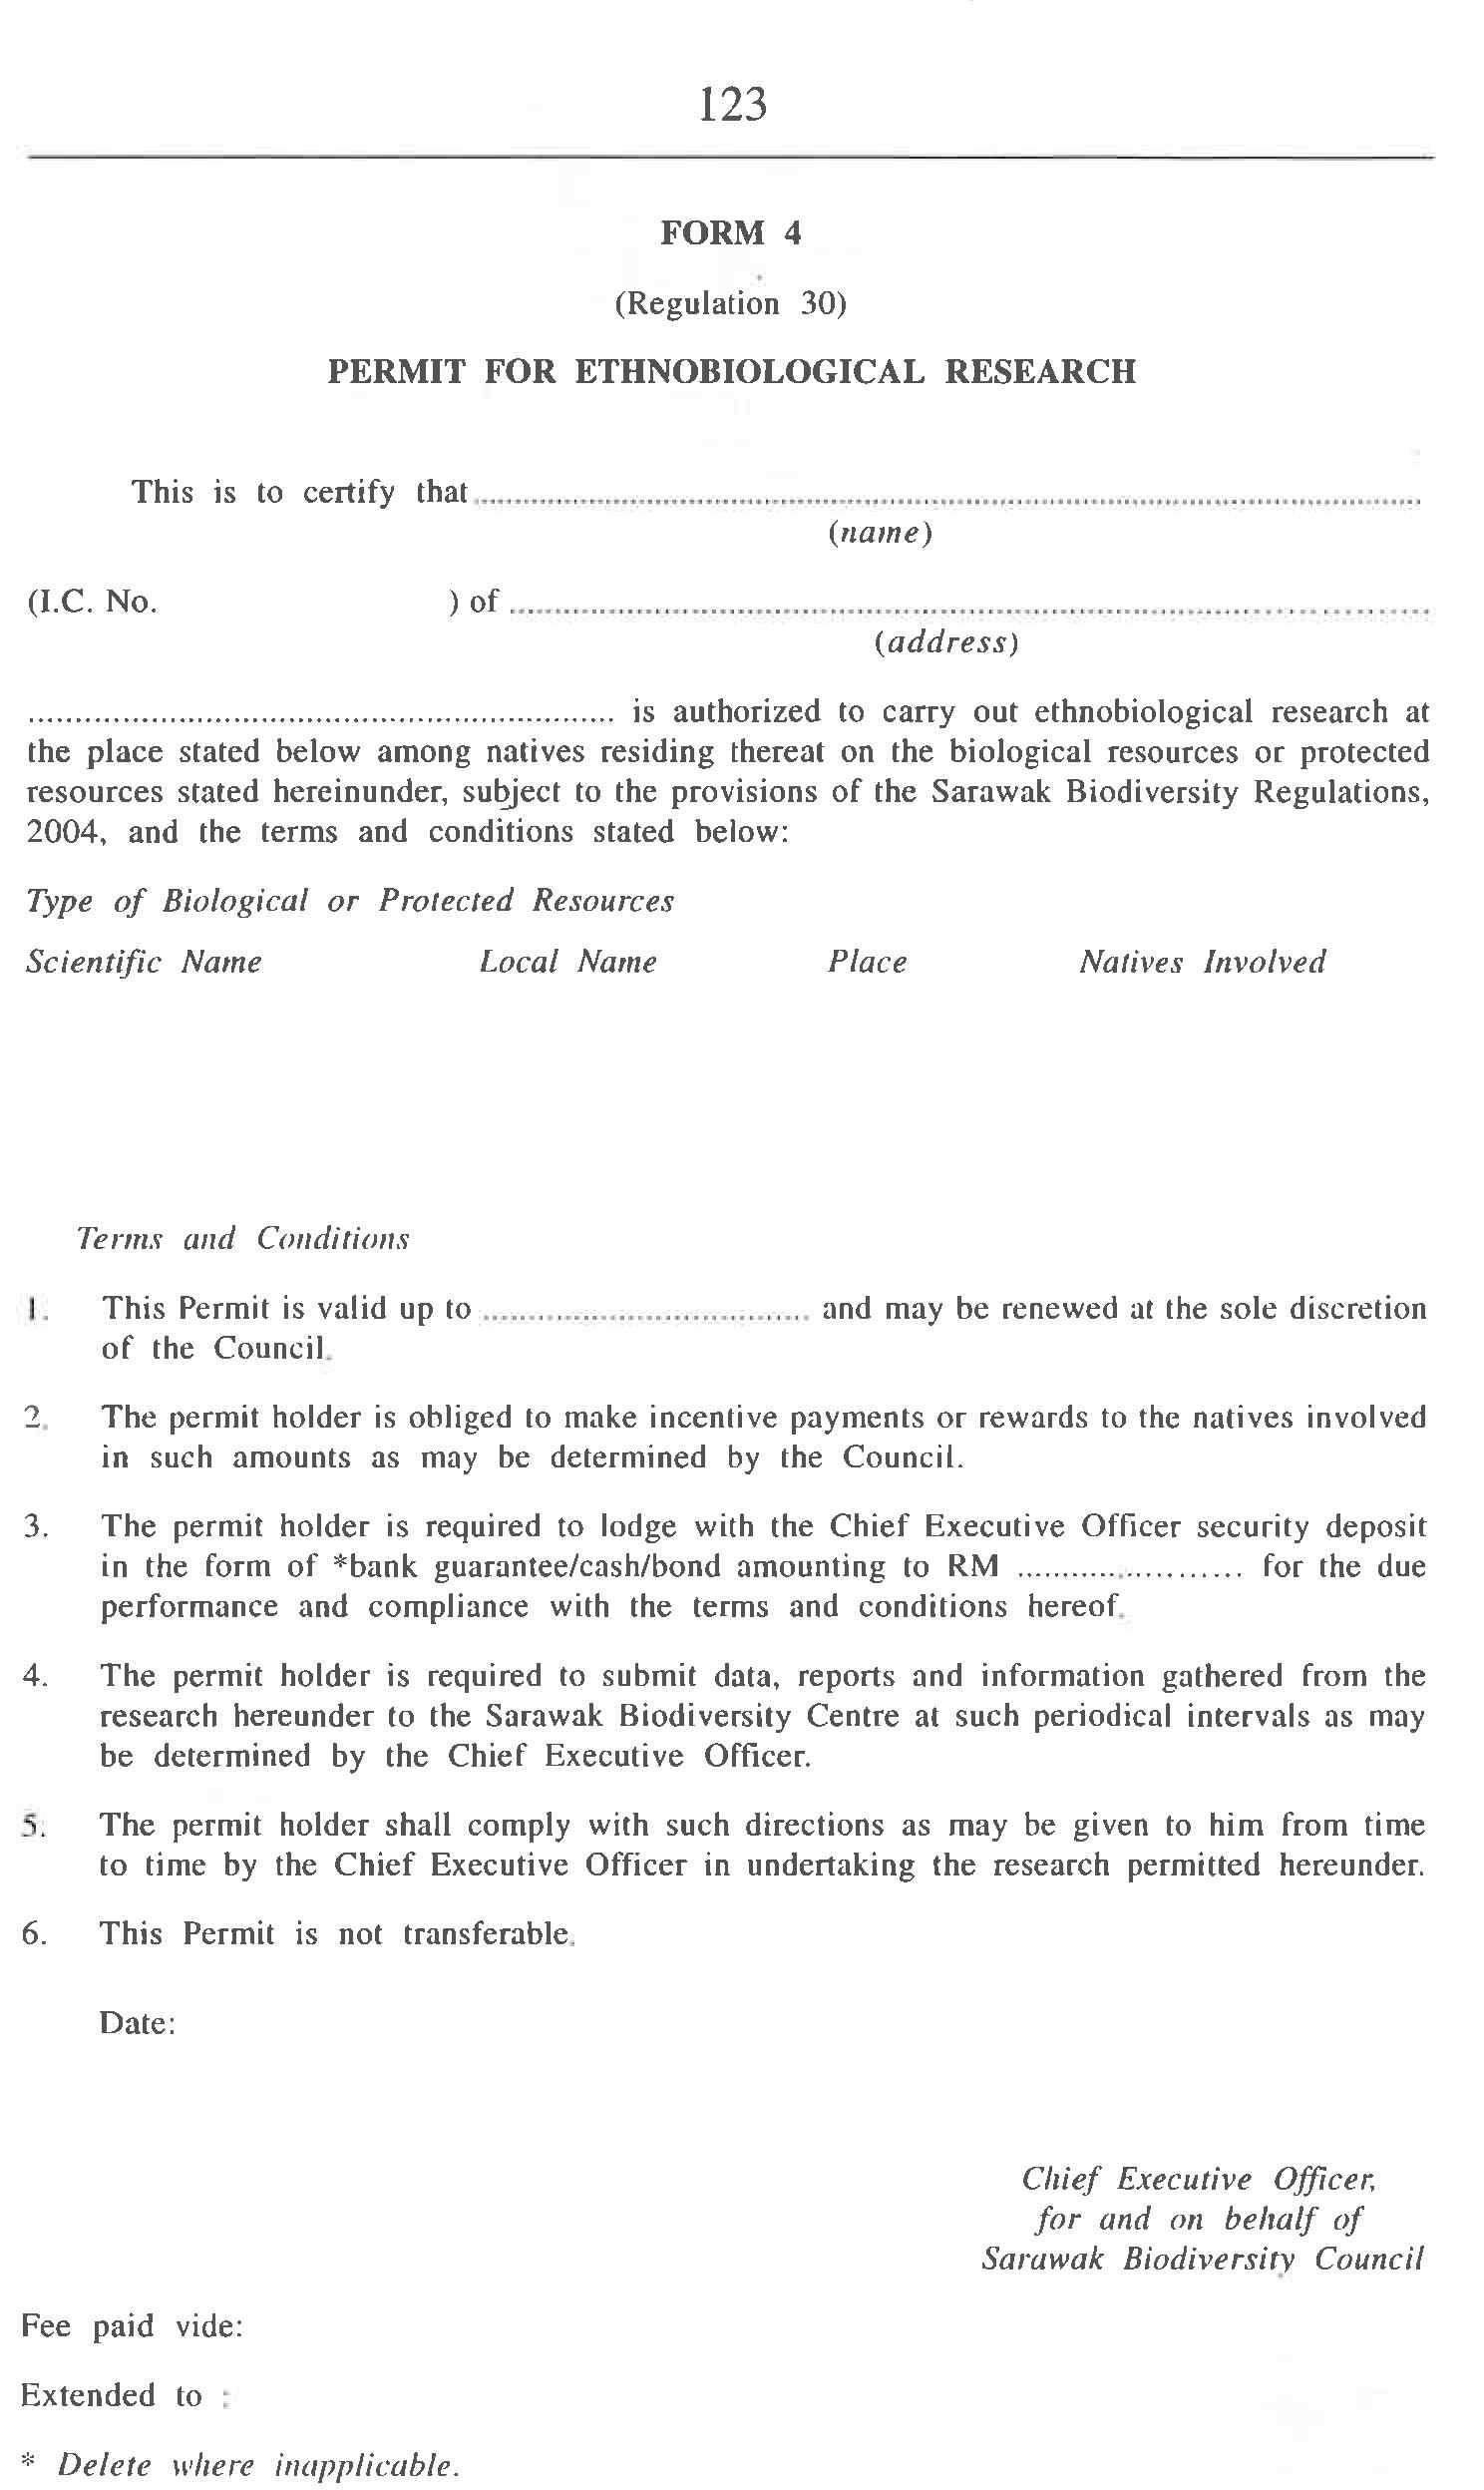 말레이시아 사라왁주 생물자원 수집 등의 관한 허가증 (Form 4)